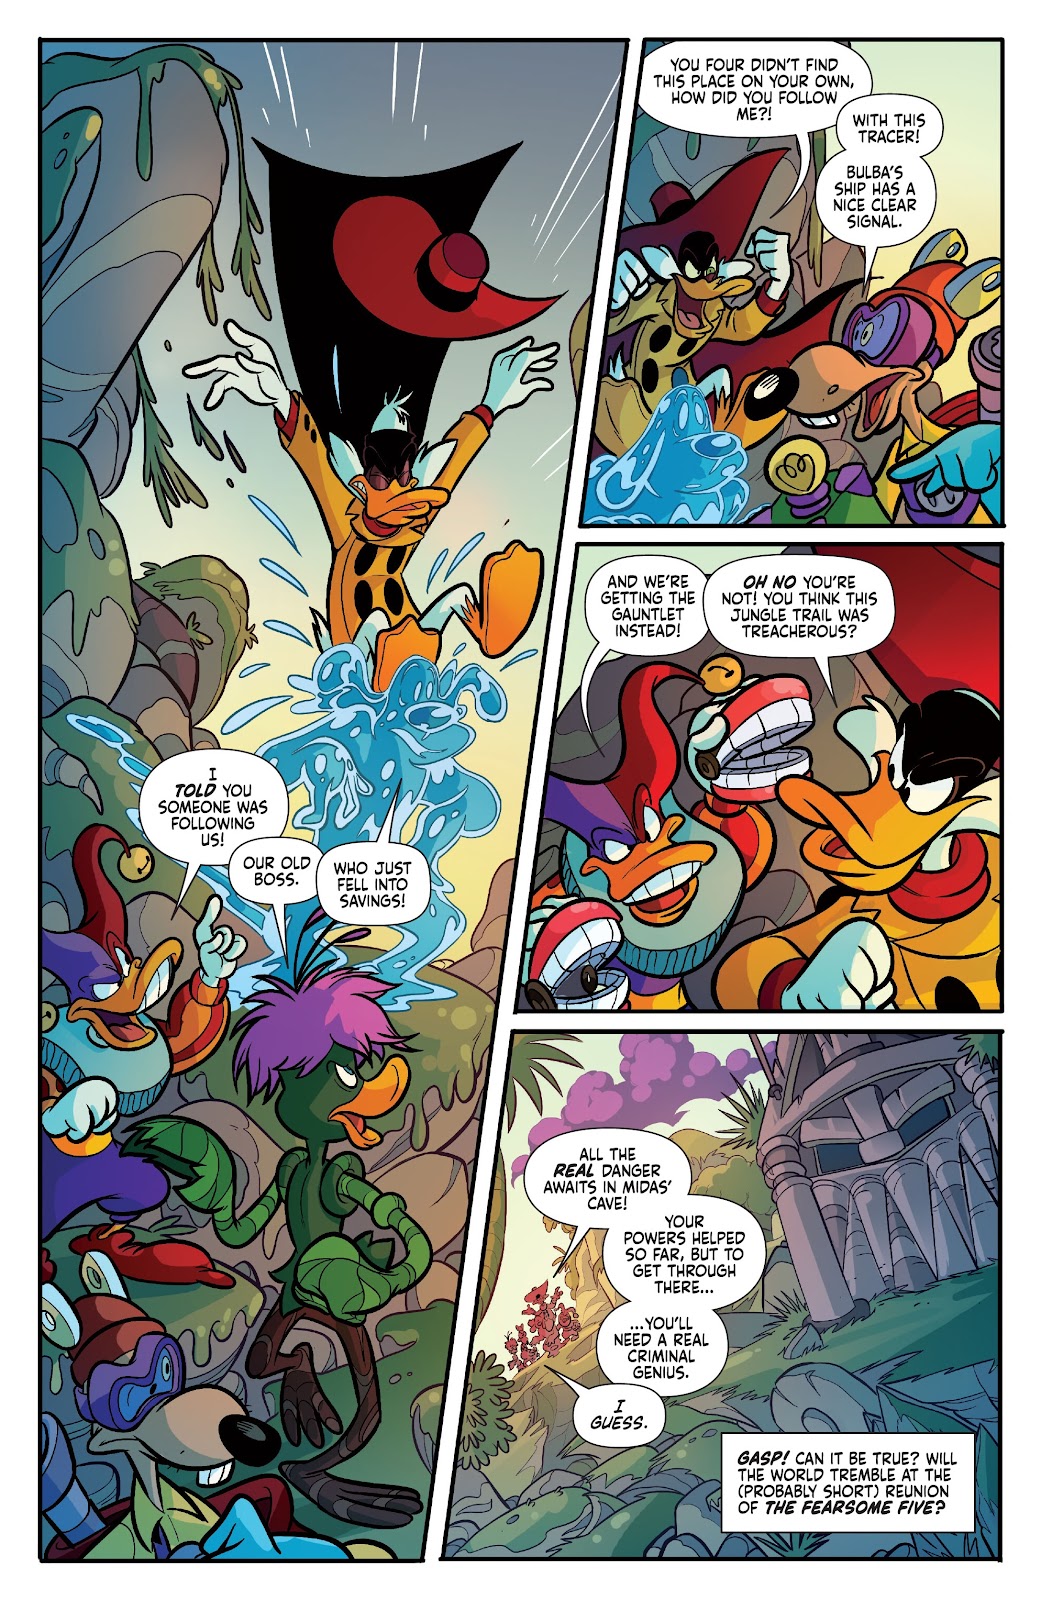 Darkwing Duck: Negaduck issue 3 - Page 18